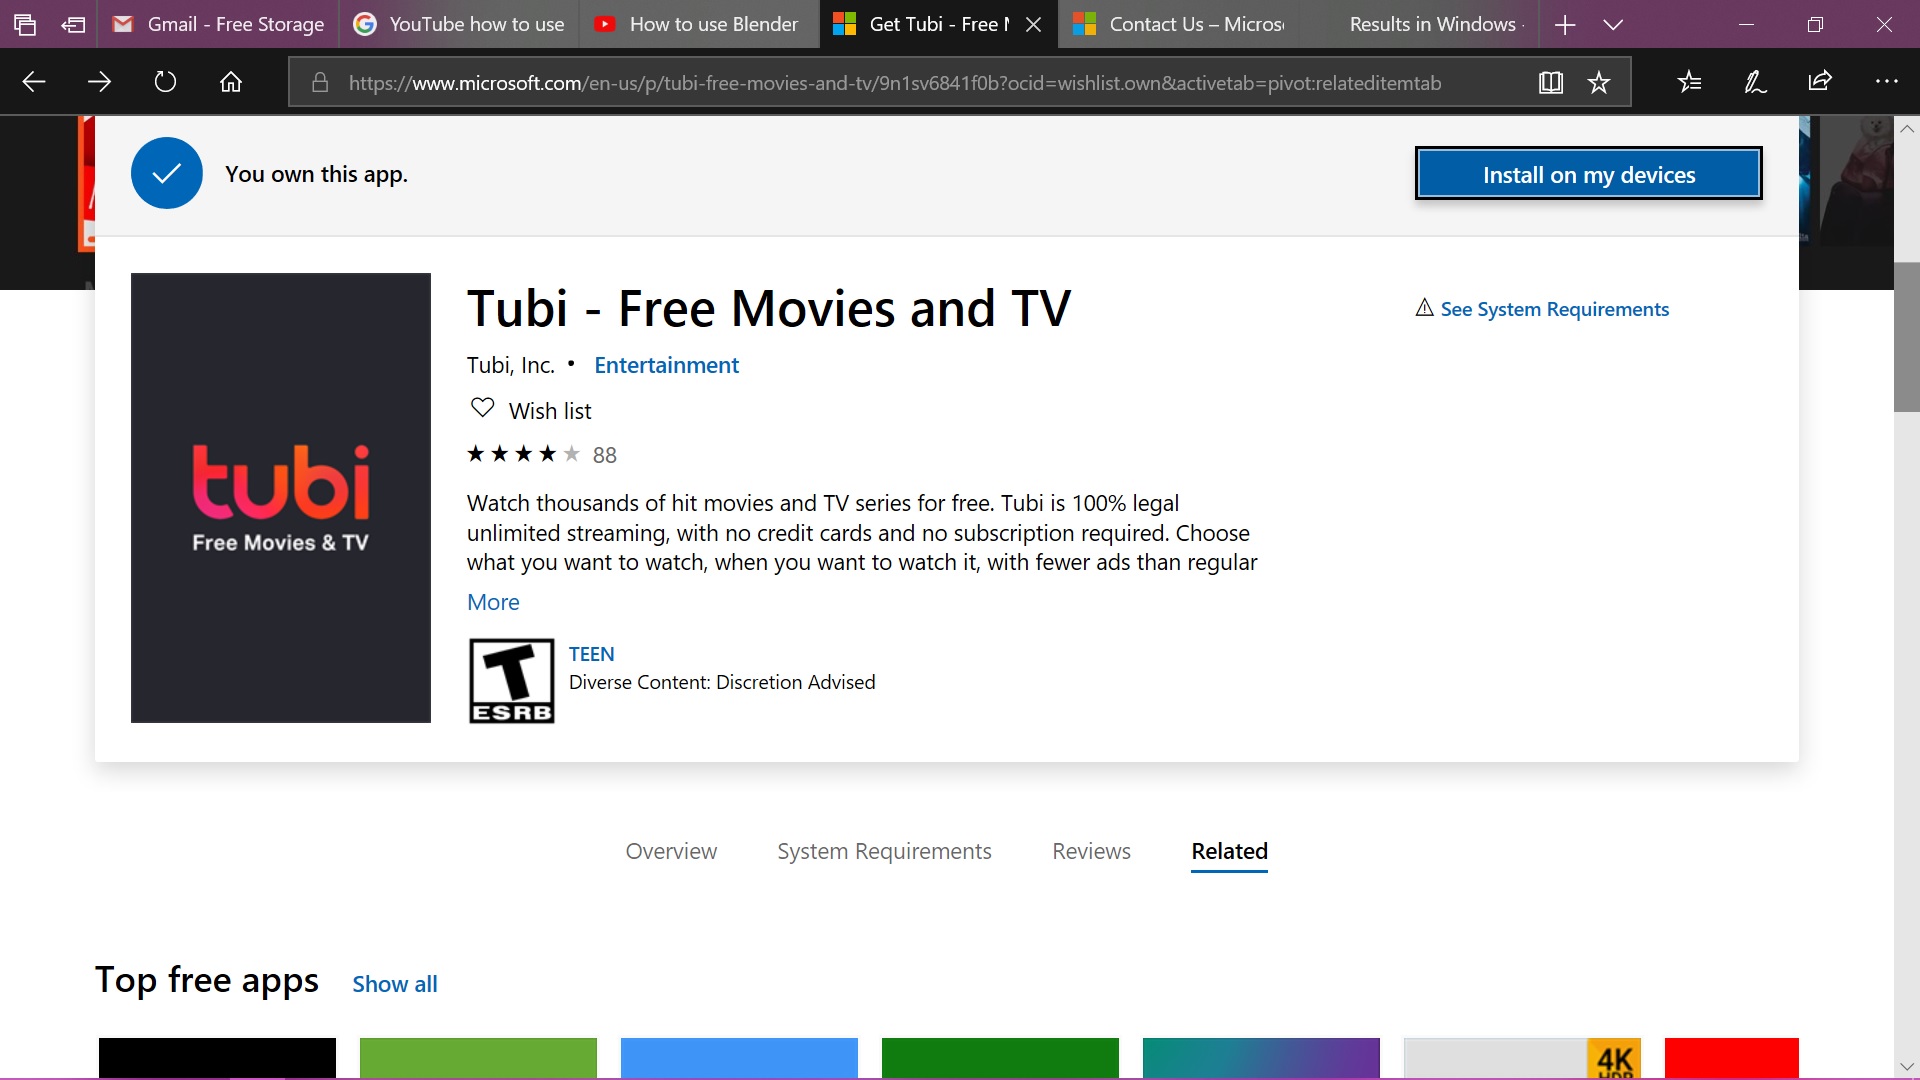 Tubi-Free TV & Movies 826240a7-8e72-406c-a1ec-10f9ddf3ae2b?upload=true.jpg